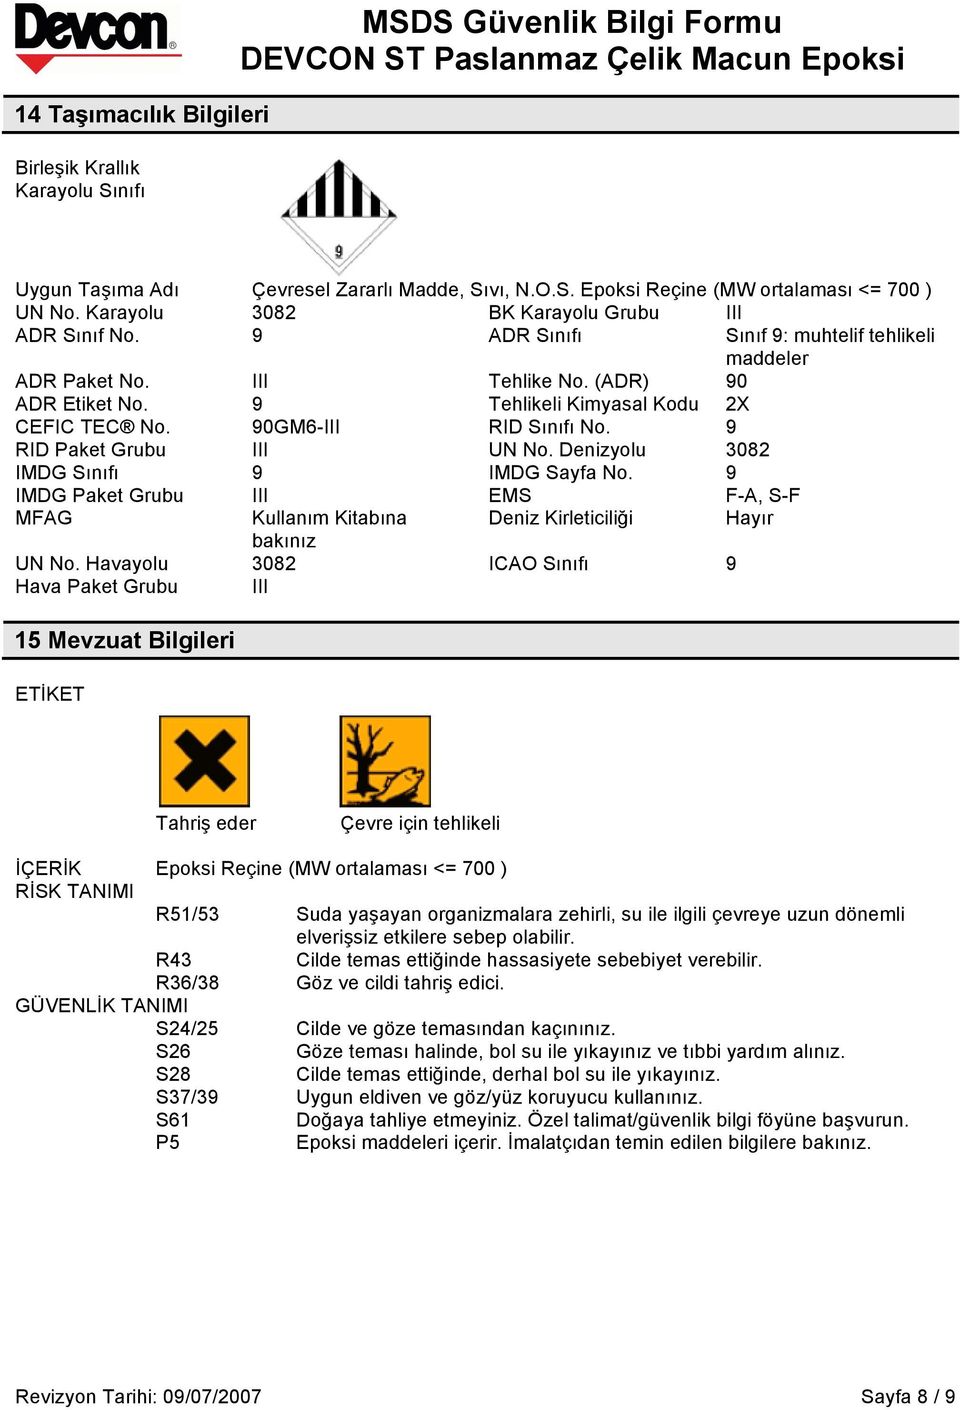 90GM6-III RID Sınıfı No. 9 RID Paket Grubu III UN No. Denizyolu 3082 IMDG Sınıfı 9 IMDG Sayfa No. 9 IMDG Paket Grubu III EMS F-A, S-F MFAG Kullanım Kitabına Deniz Kirleticiliği Hayır bakınız UN No.